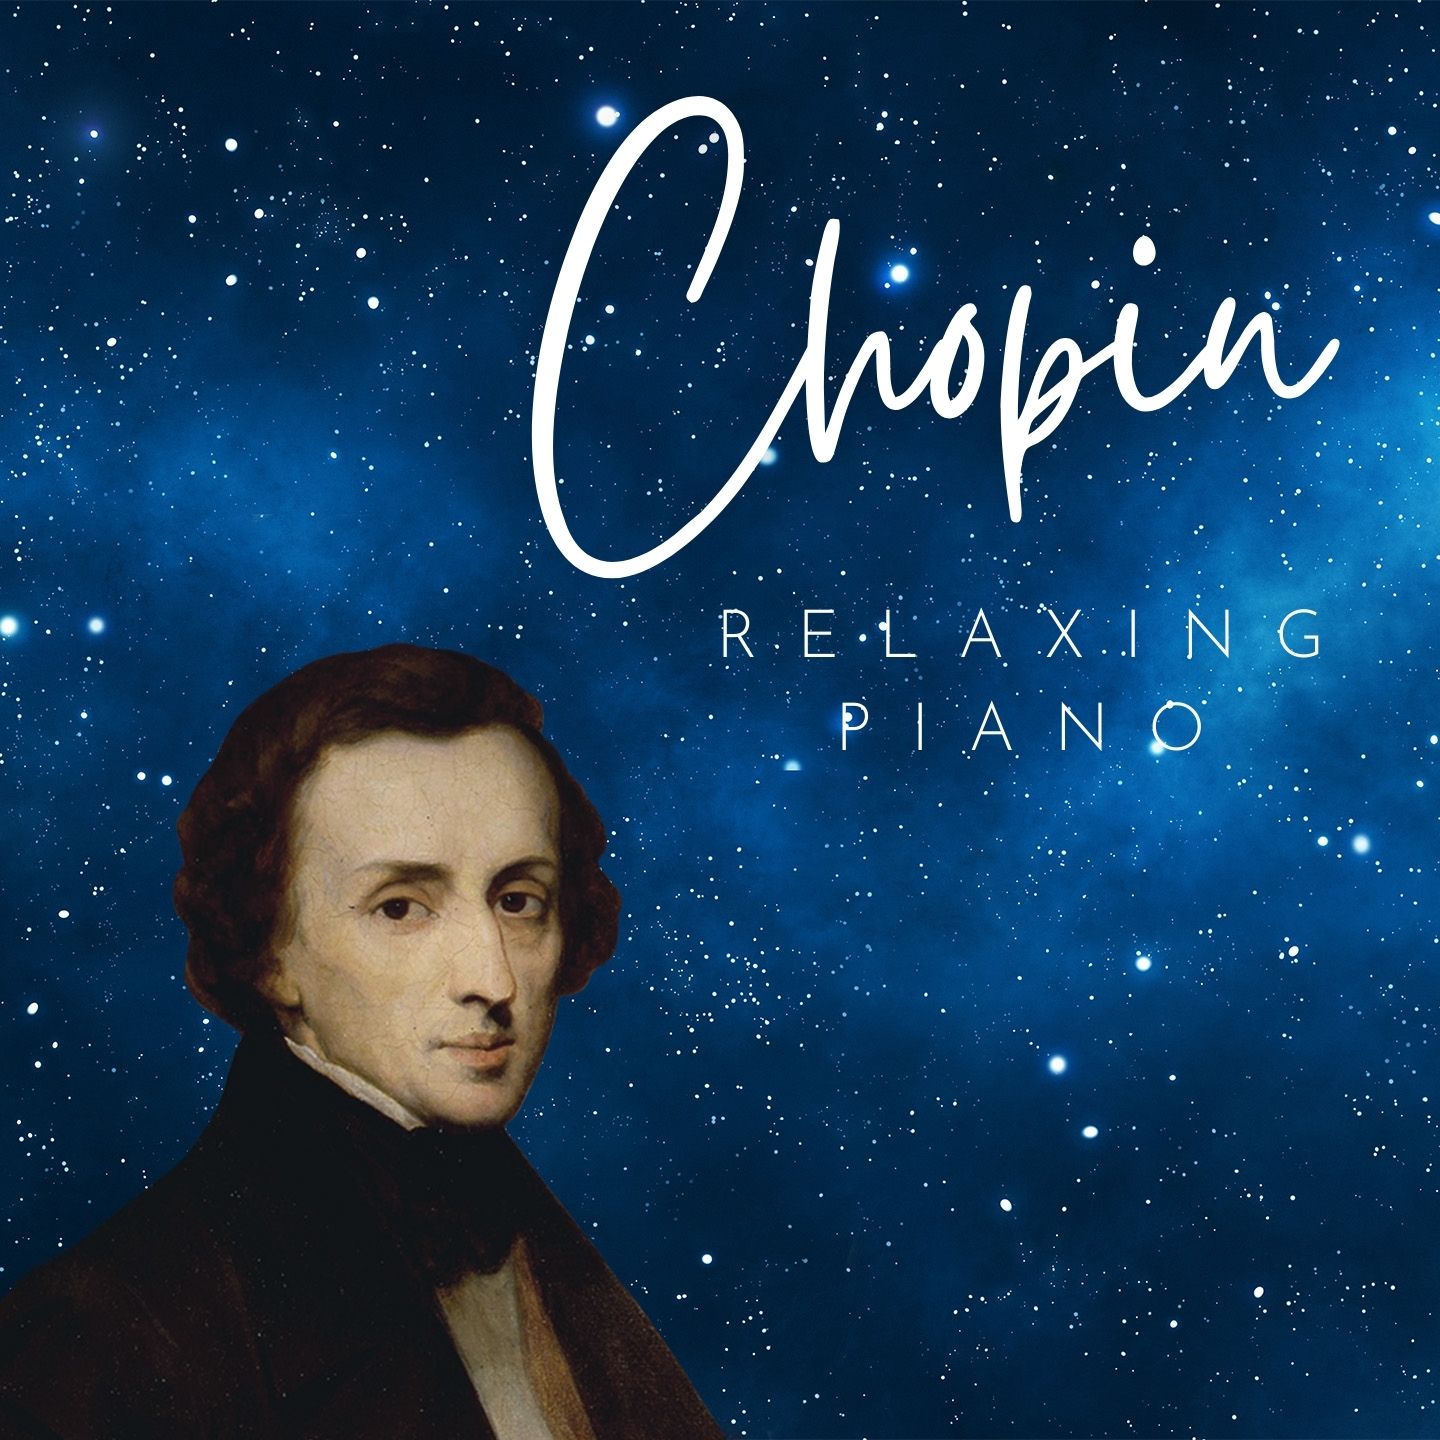 Chopin: Relaxing Piano